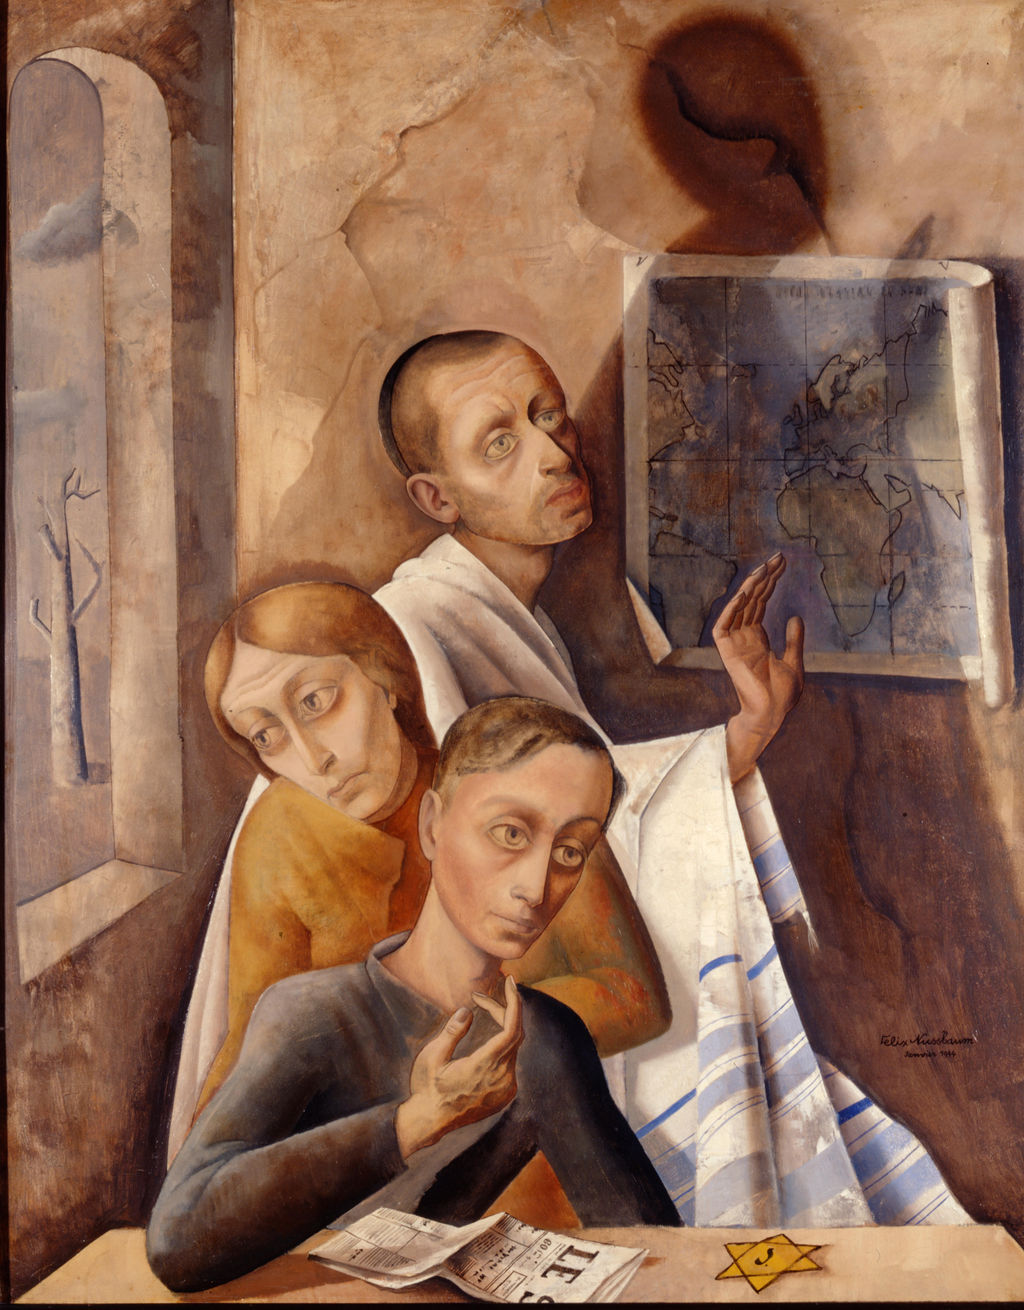 Felix Nussbaum, "Selbstporträt im Versteck", 1944